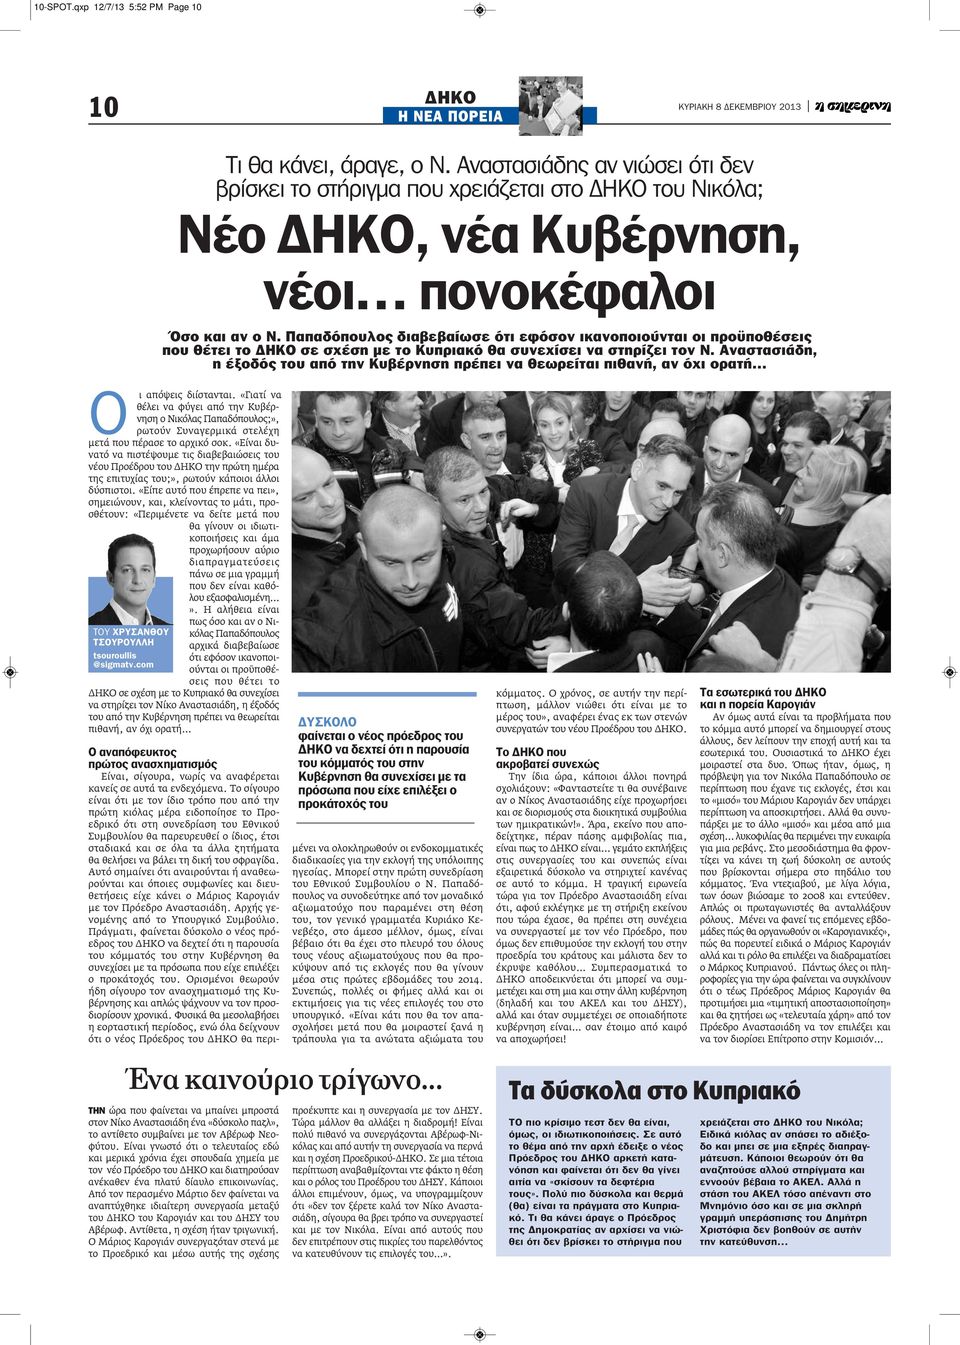 Παπαδόπουλος διαβεβαίωσε ότι εφόσον ικανοποιούνται οι προϋποθέσεις που θέτει το ΔΗΚΟ σε σχέση με το Κυπριακό θα συνεχίσει να στηρίζει τον Ν.